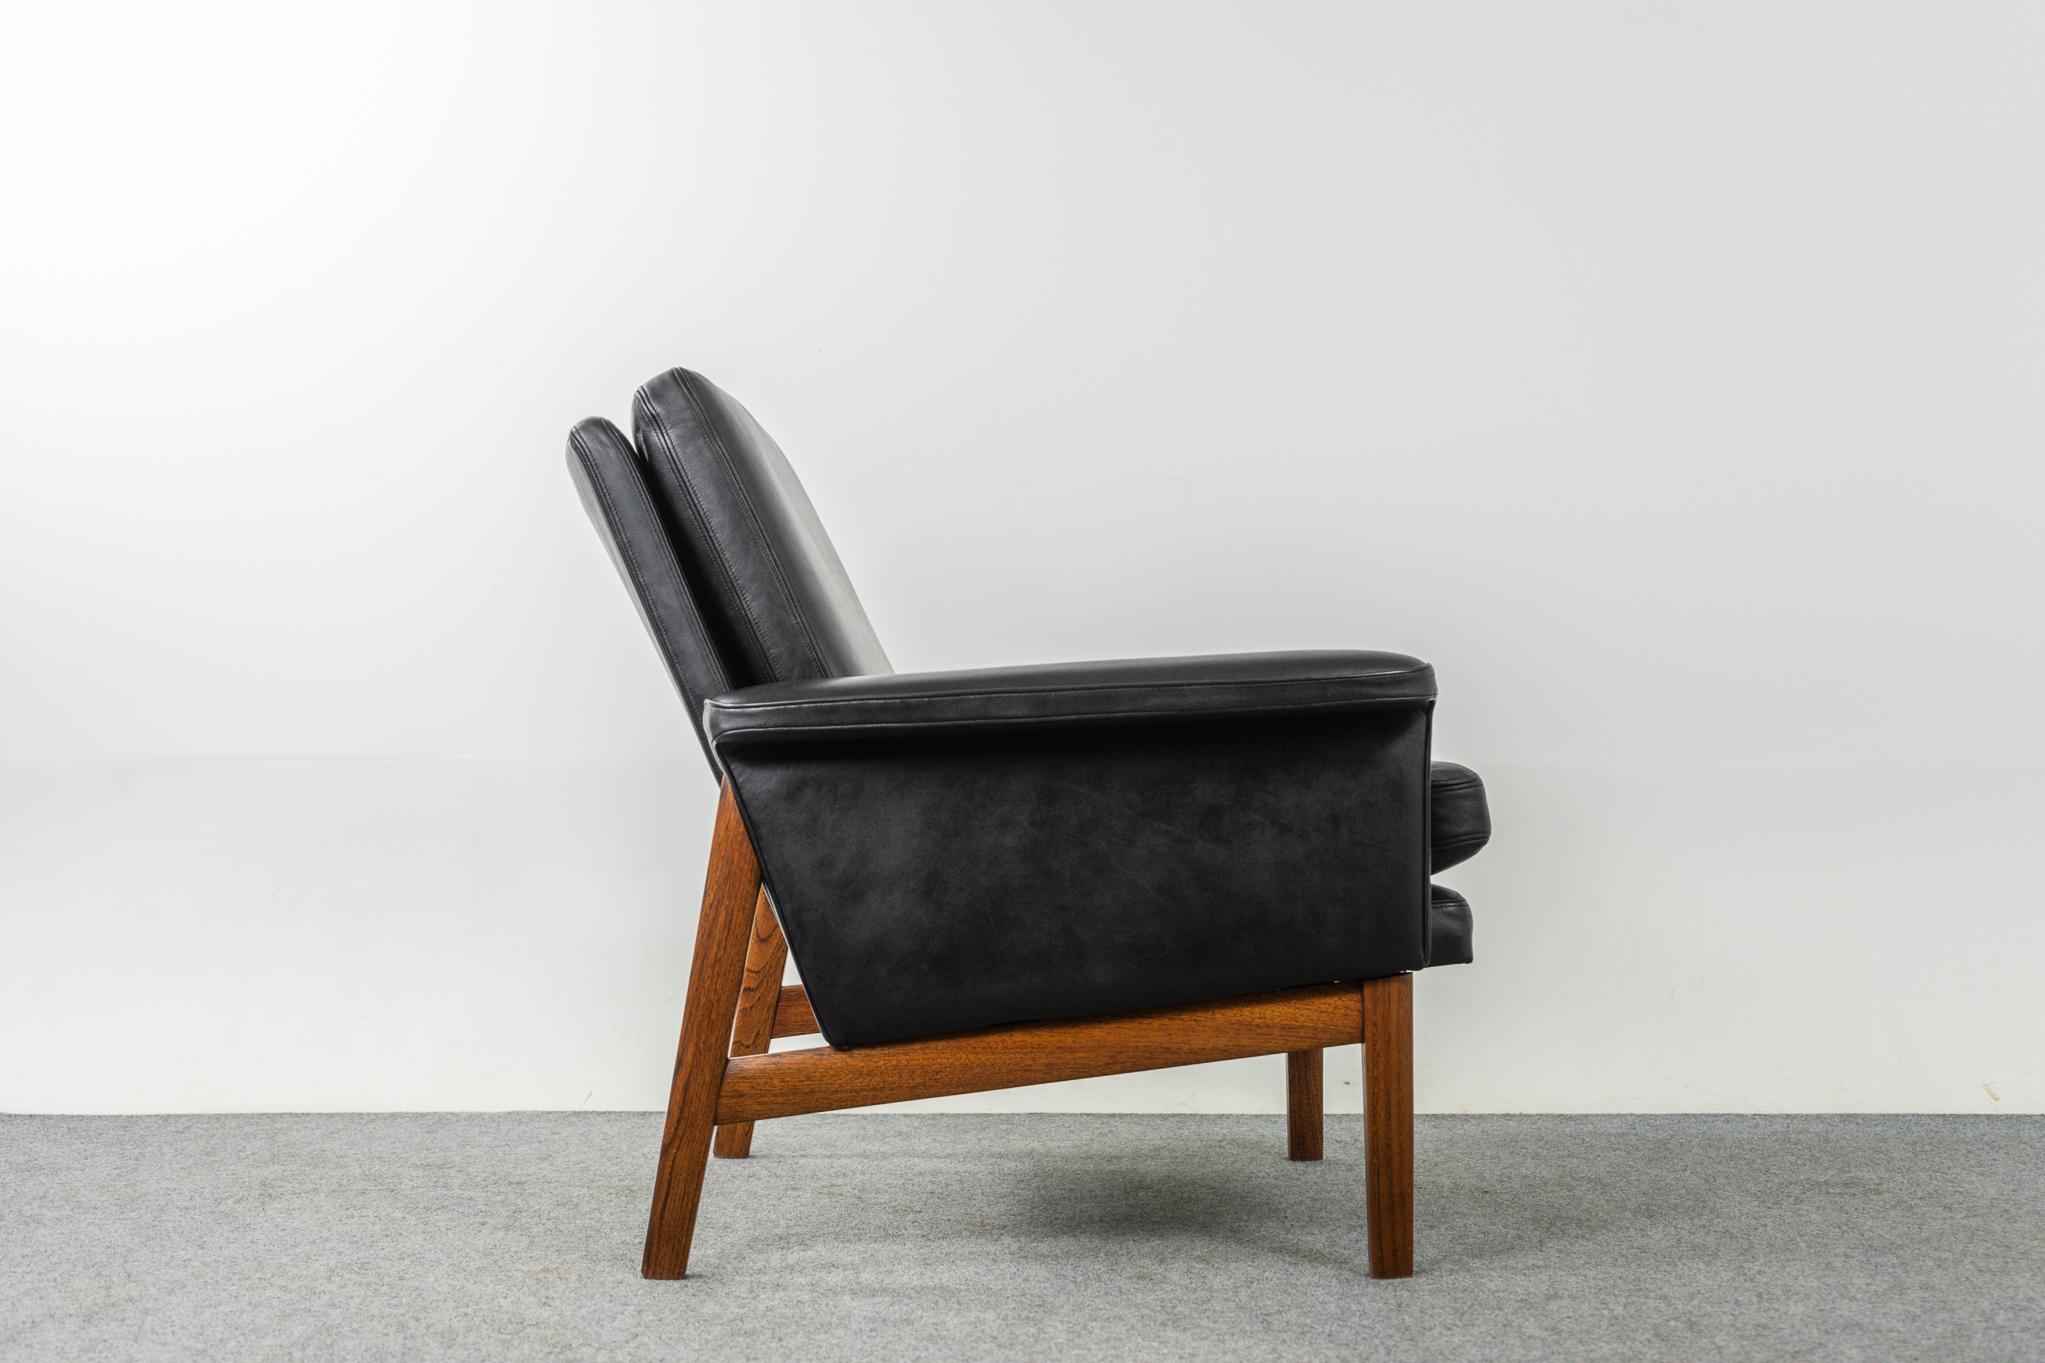 Mid-20th Century Leather & Teak Model 218 Jupiter Chair by Finn Juhl for France & Son